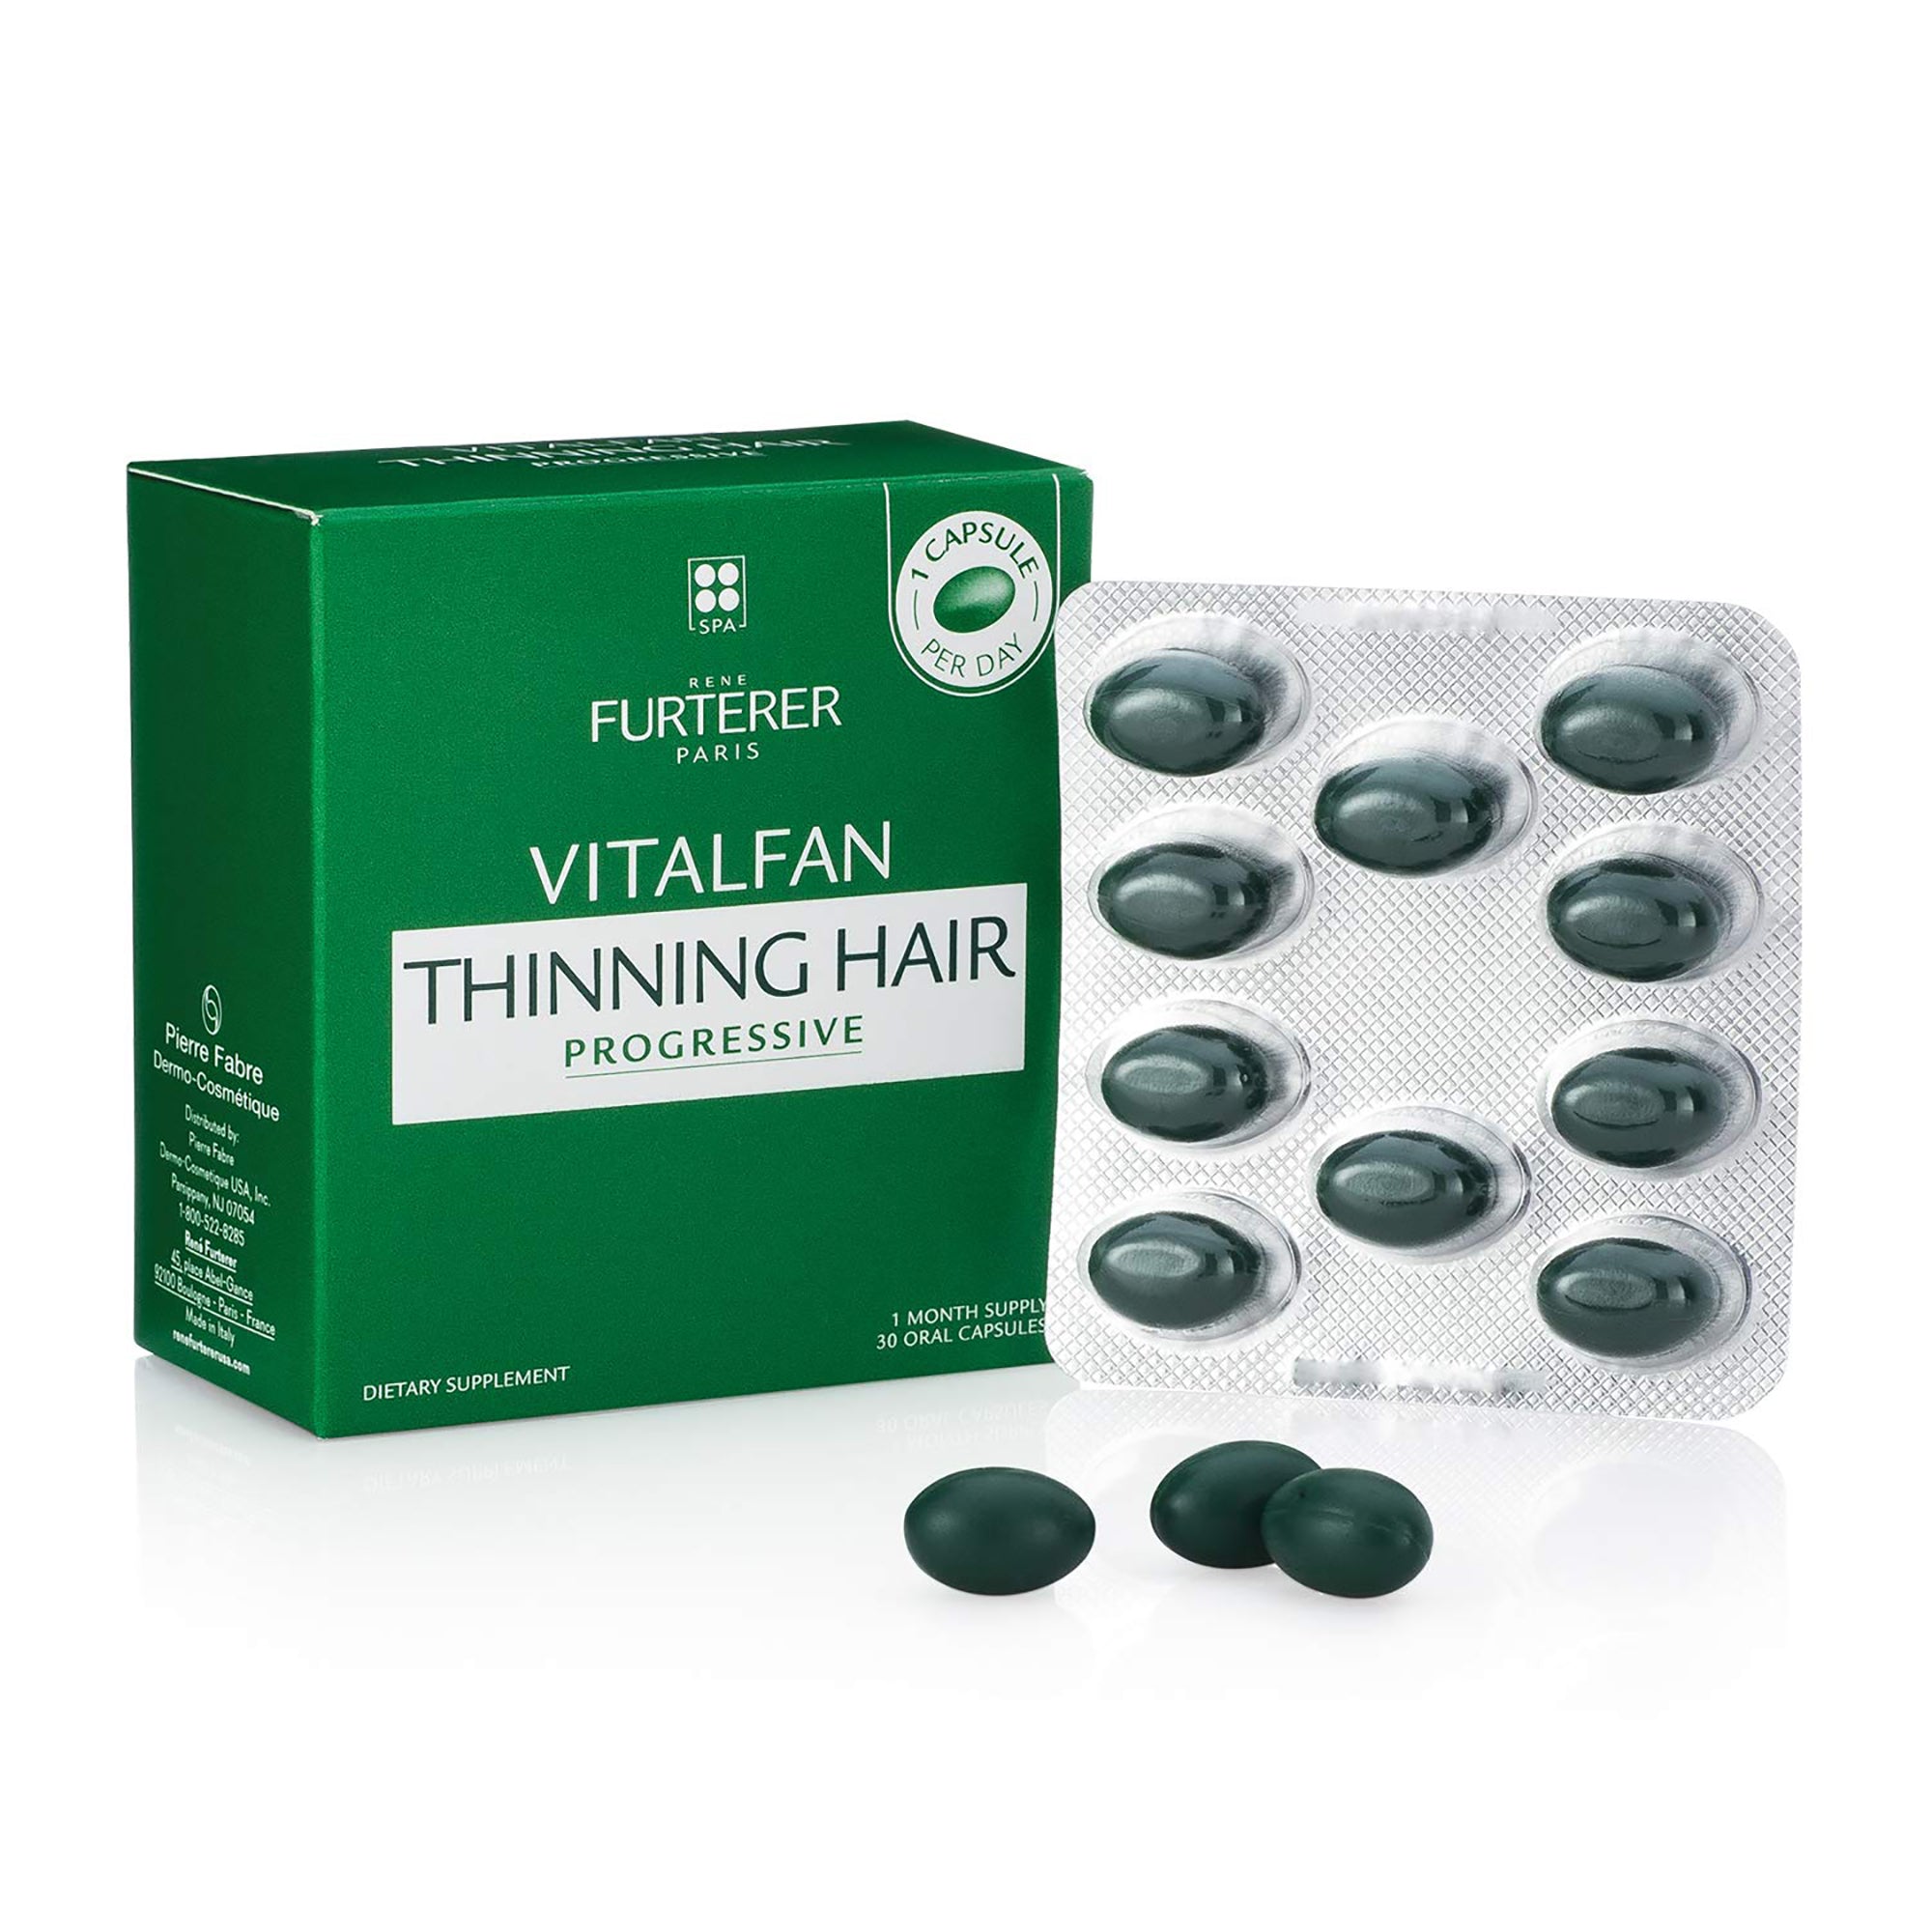 Rene Furterer Vitaflan For Progressive Thinning Hair / 30PCS